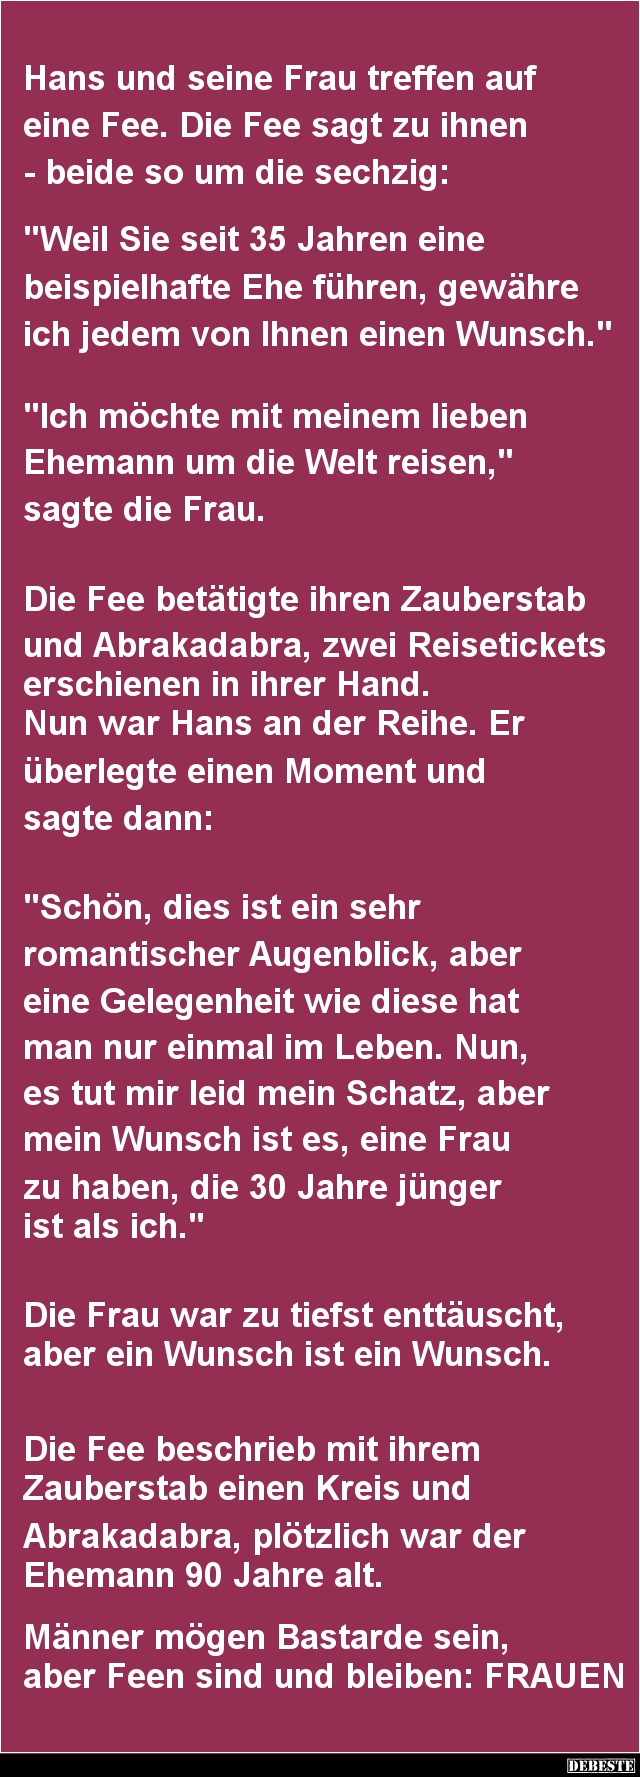 Hans und seine Frau treffen auf eine Fee - Lustige Bilder | DEBESTE.de